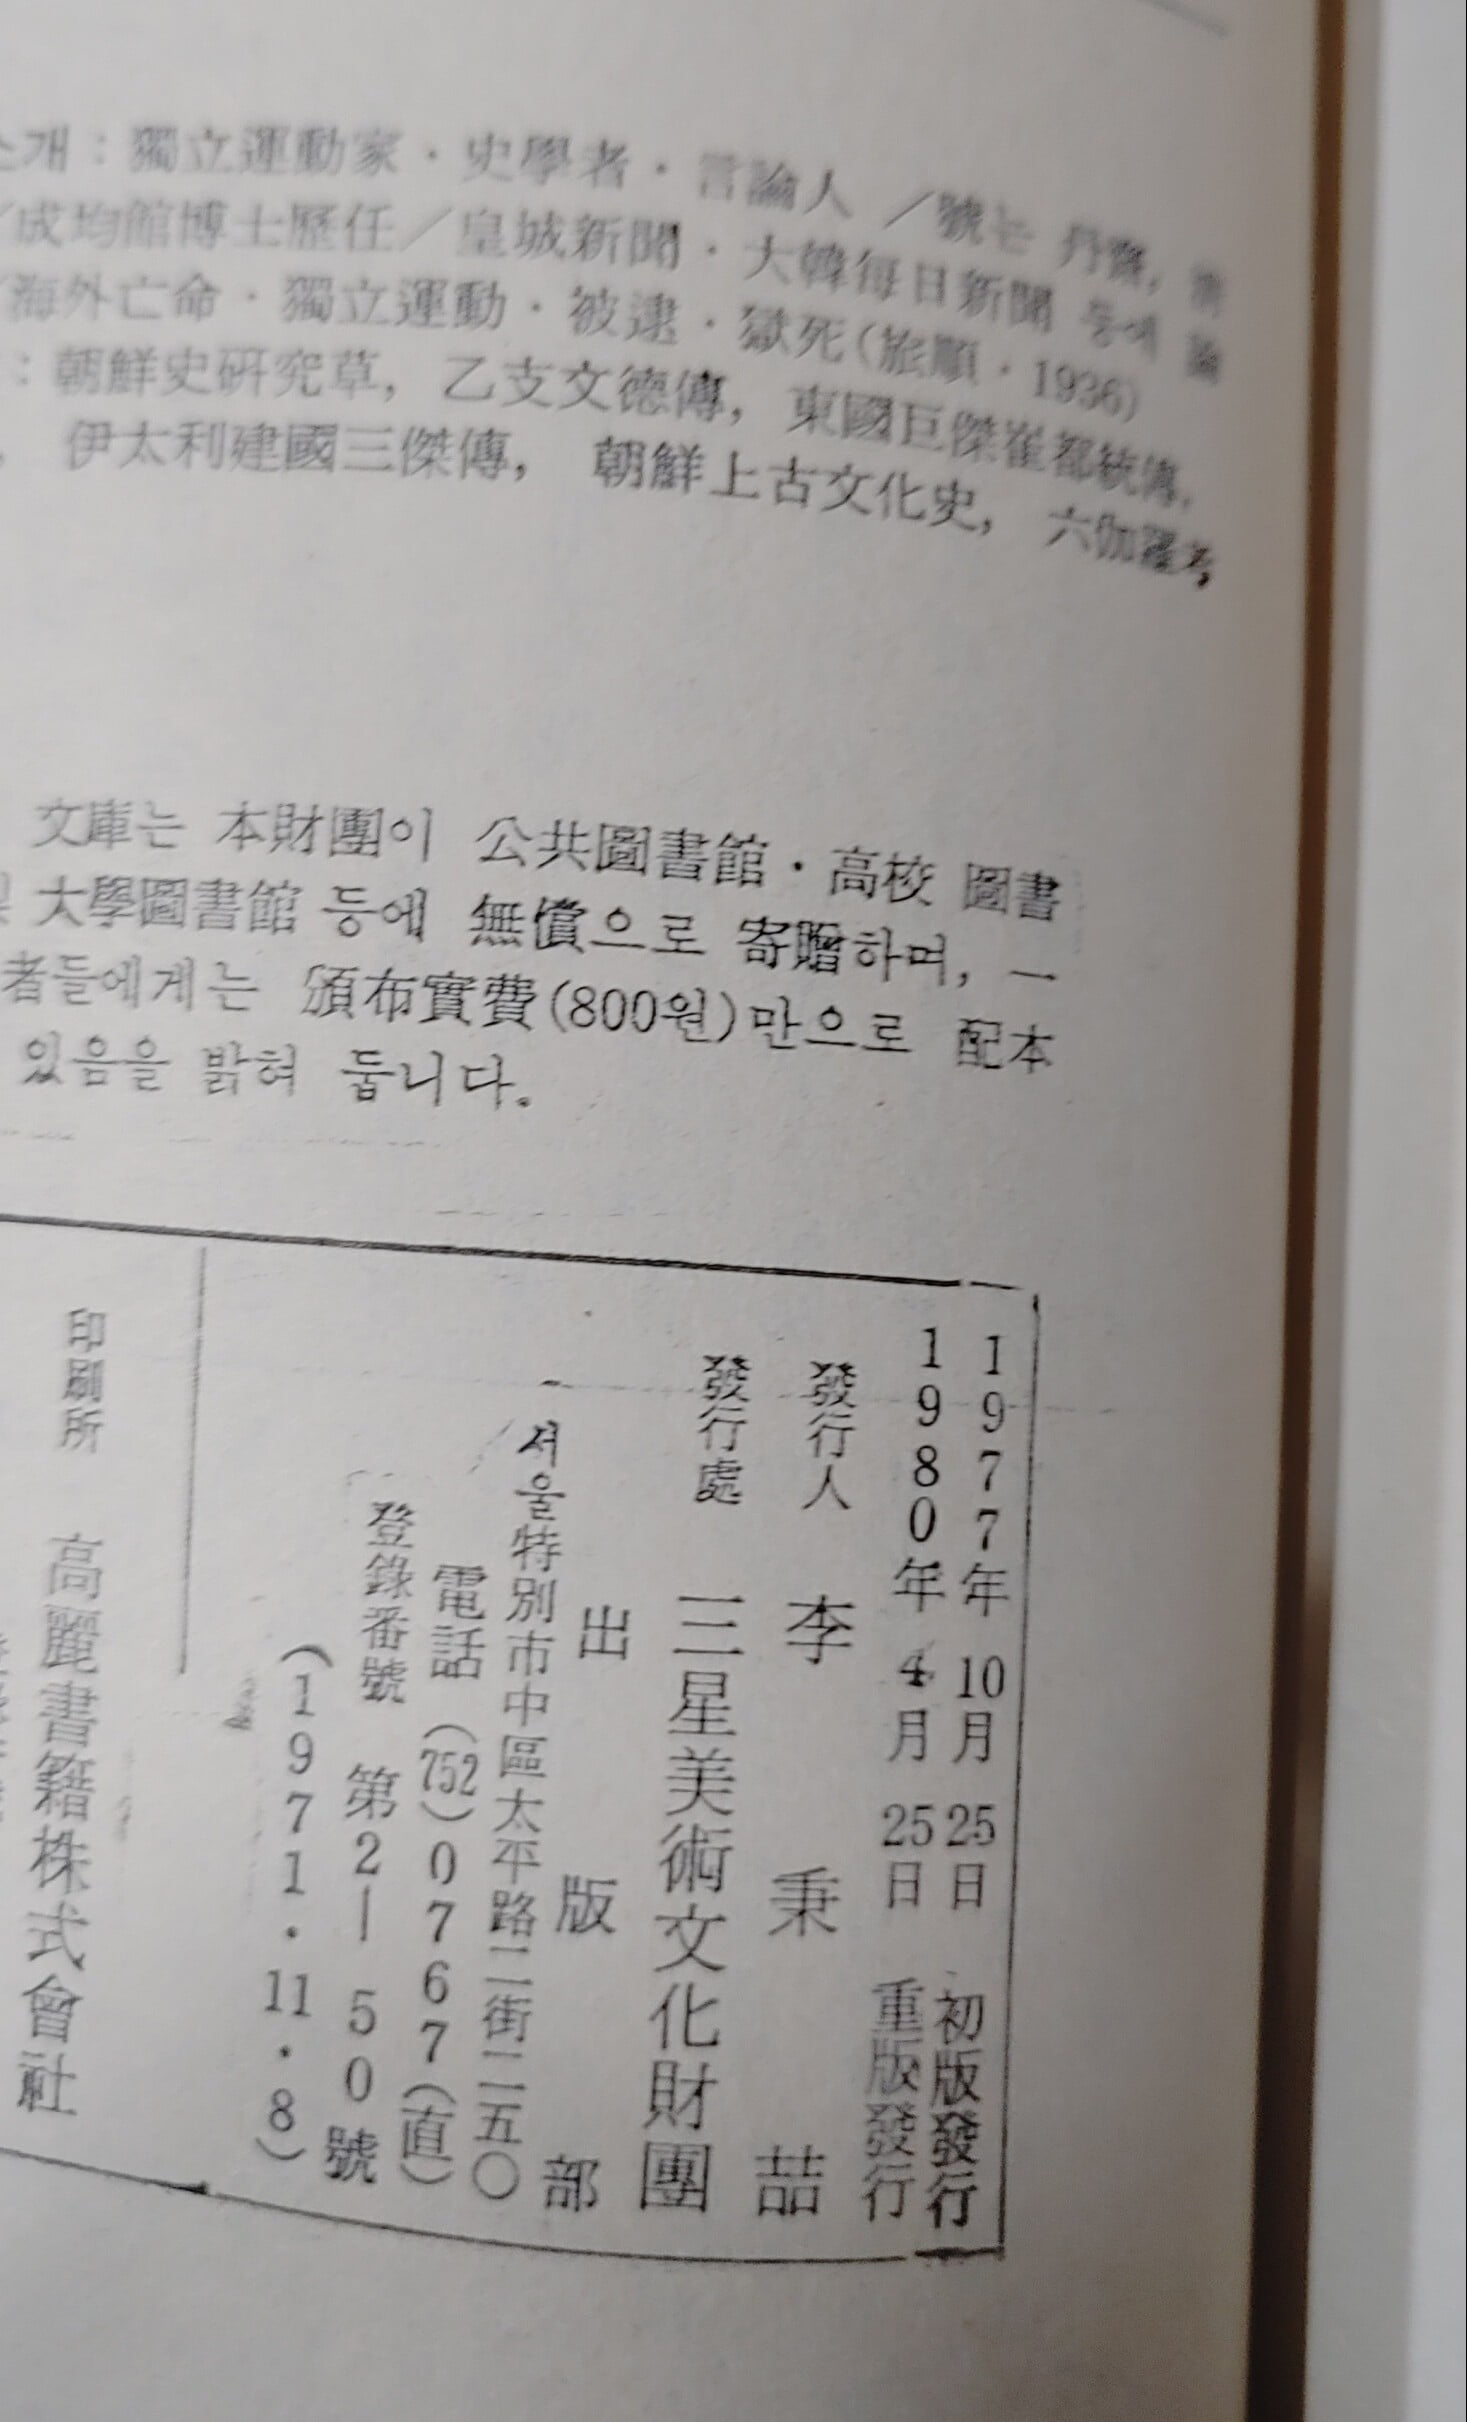 三星文化文庫 99  朝鮮上古史上  ·申采浩著